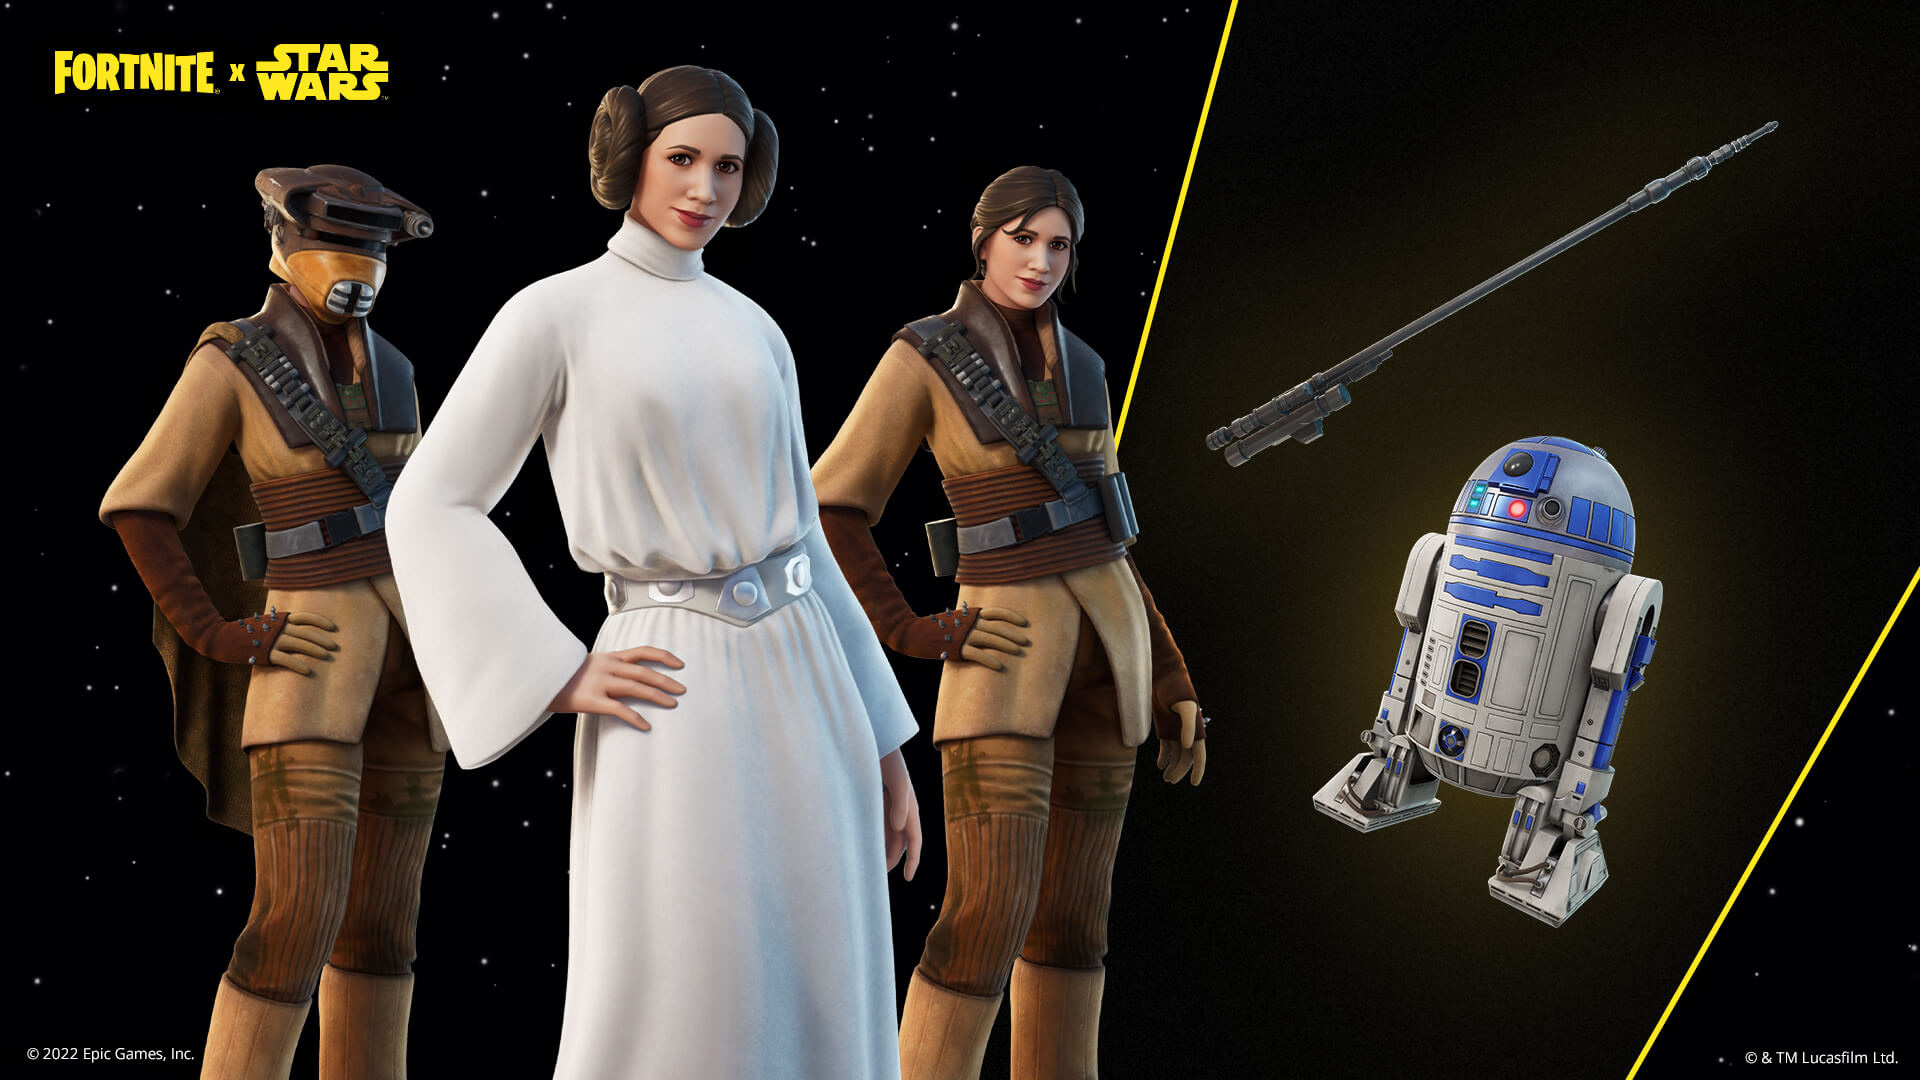 Najnowsze postacie z „Fortnite” z Gwiezdnych Wojen to Luke, Leia i Han